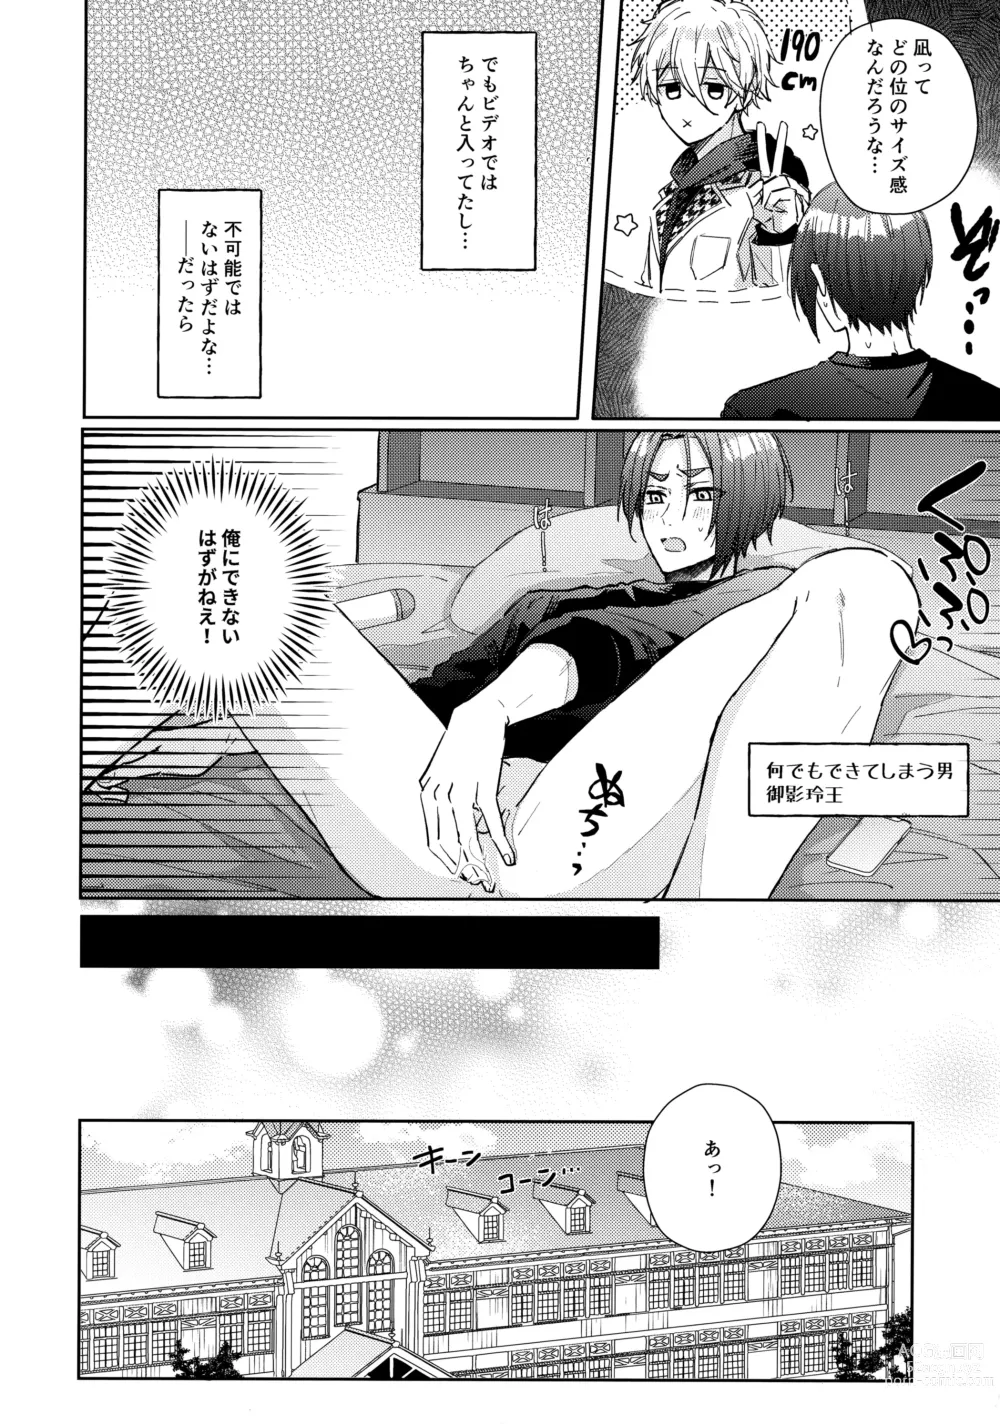 Page 19 of doujinshi Shokyuu Renai Shinan